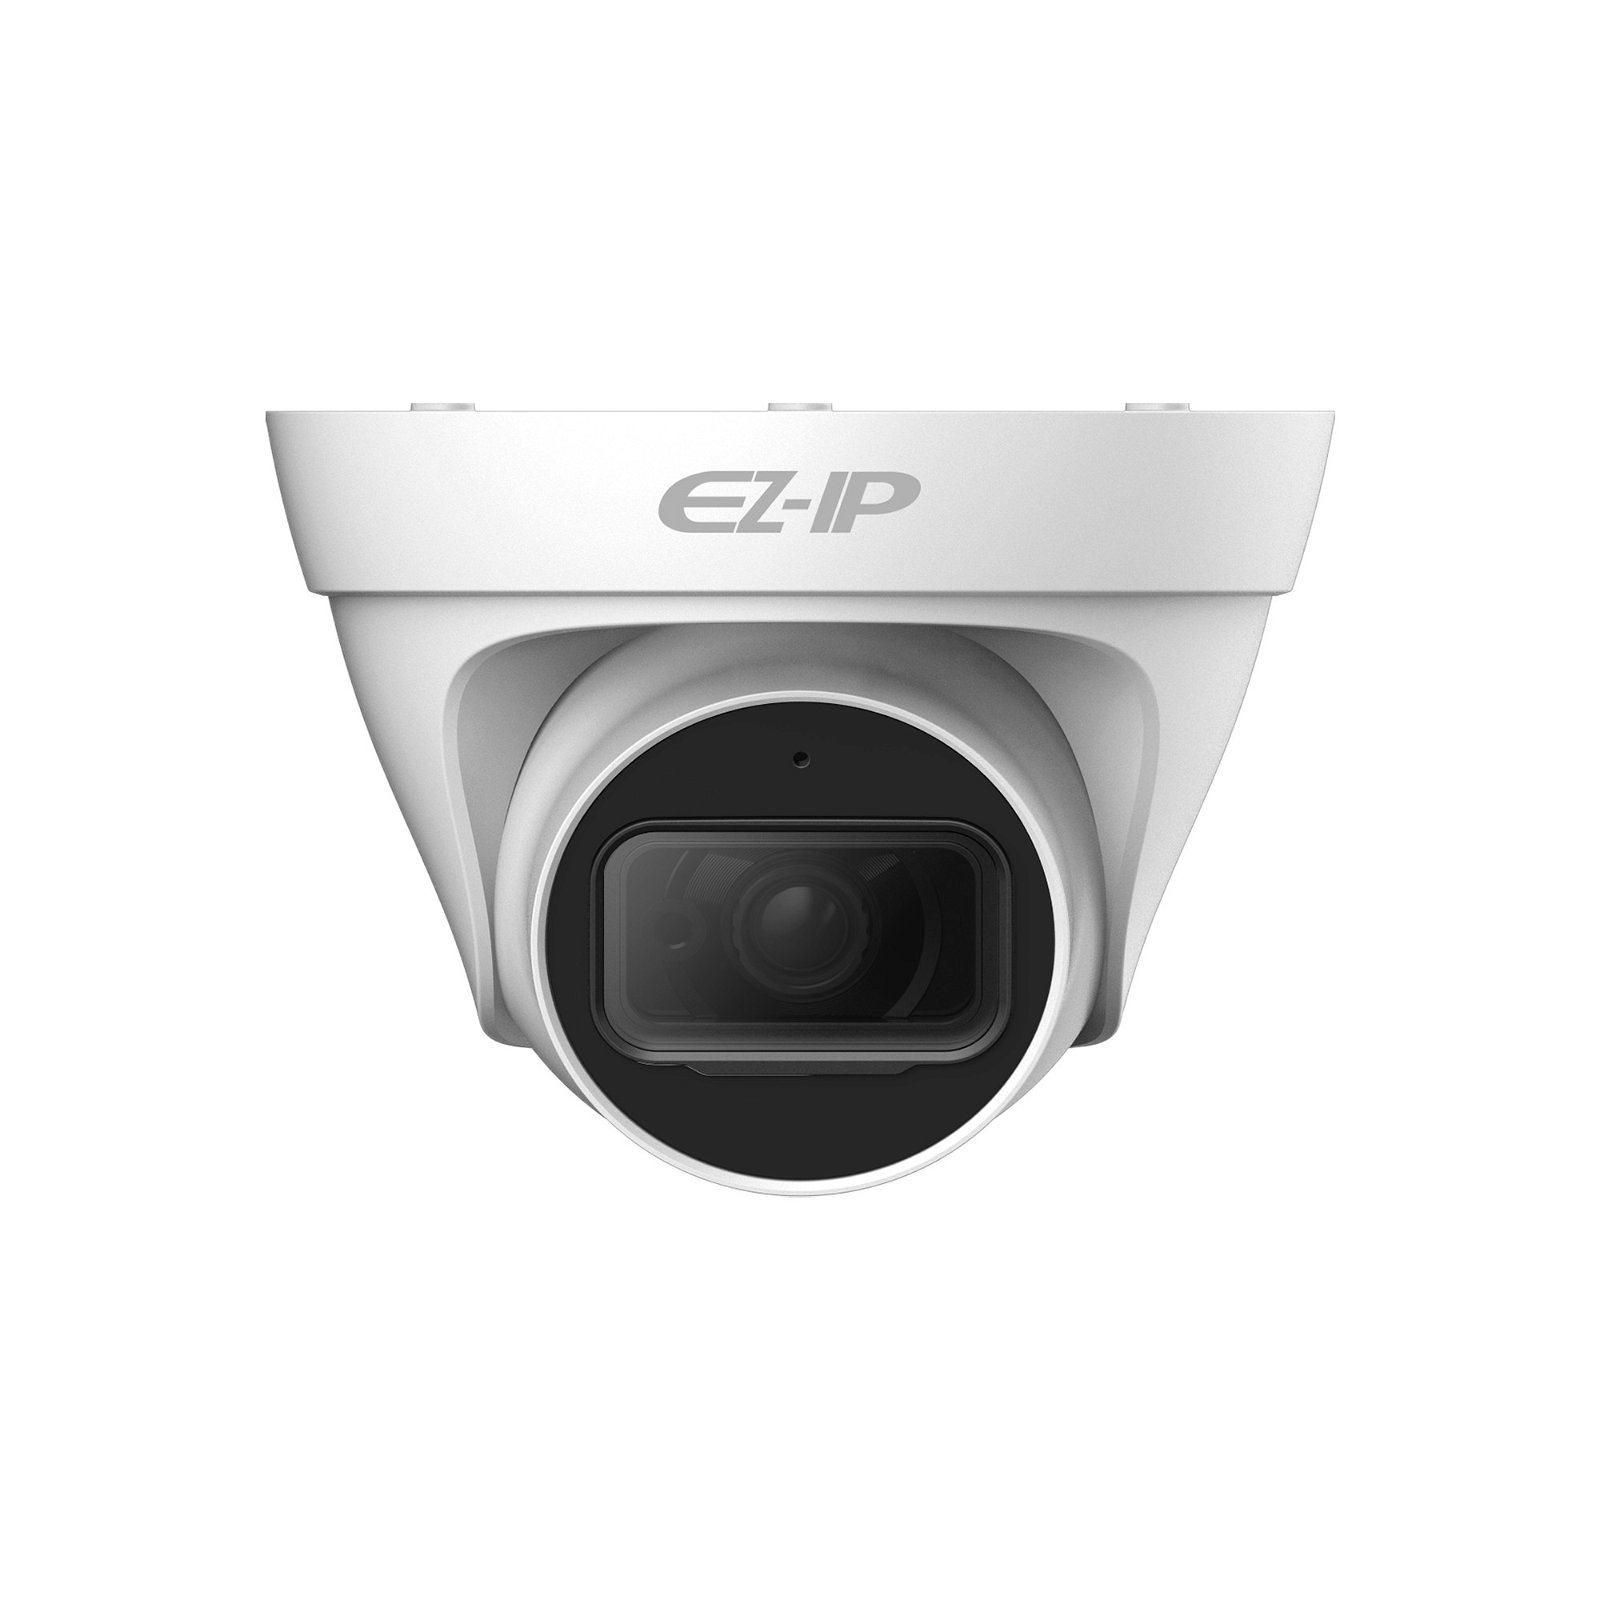 IP kamera Dahua EZ-IP IPC-T1B40P-0360B 4Mpx, 3,6 mm, PoE